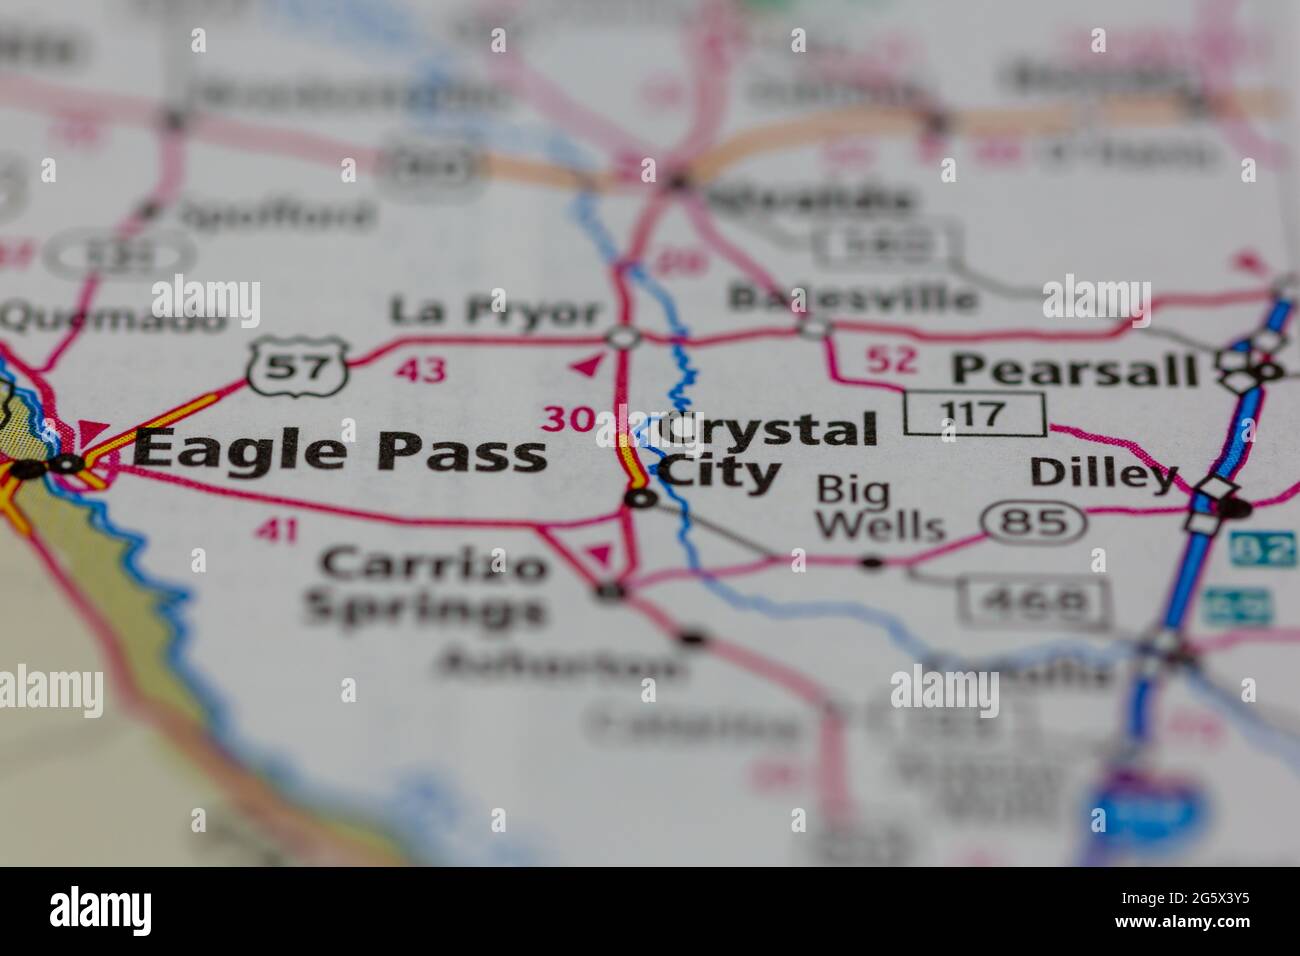 Crystal City Texas Usa Se Muestra En Un Mapa Geografico O Mapa De Carreteras 2g5x3y5 